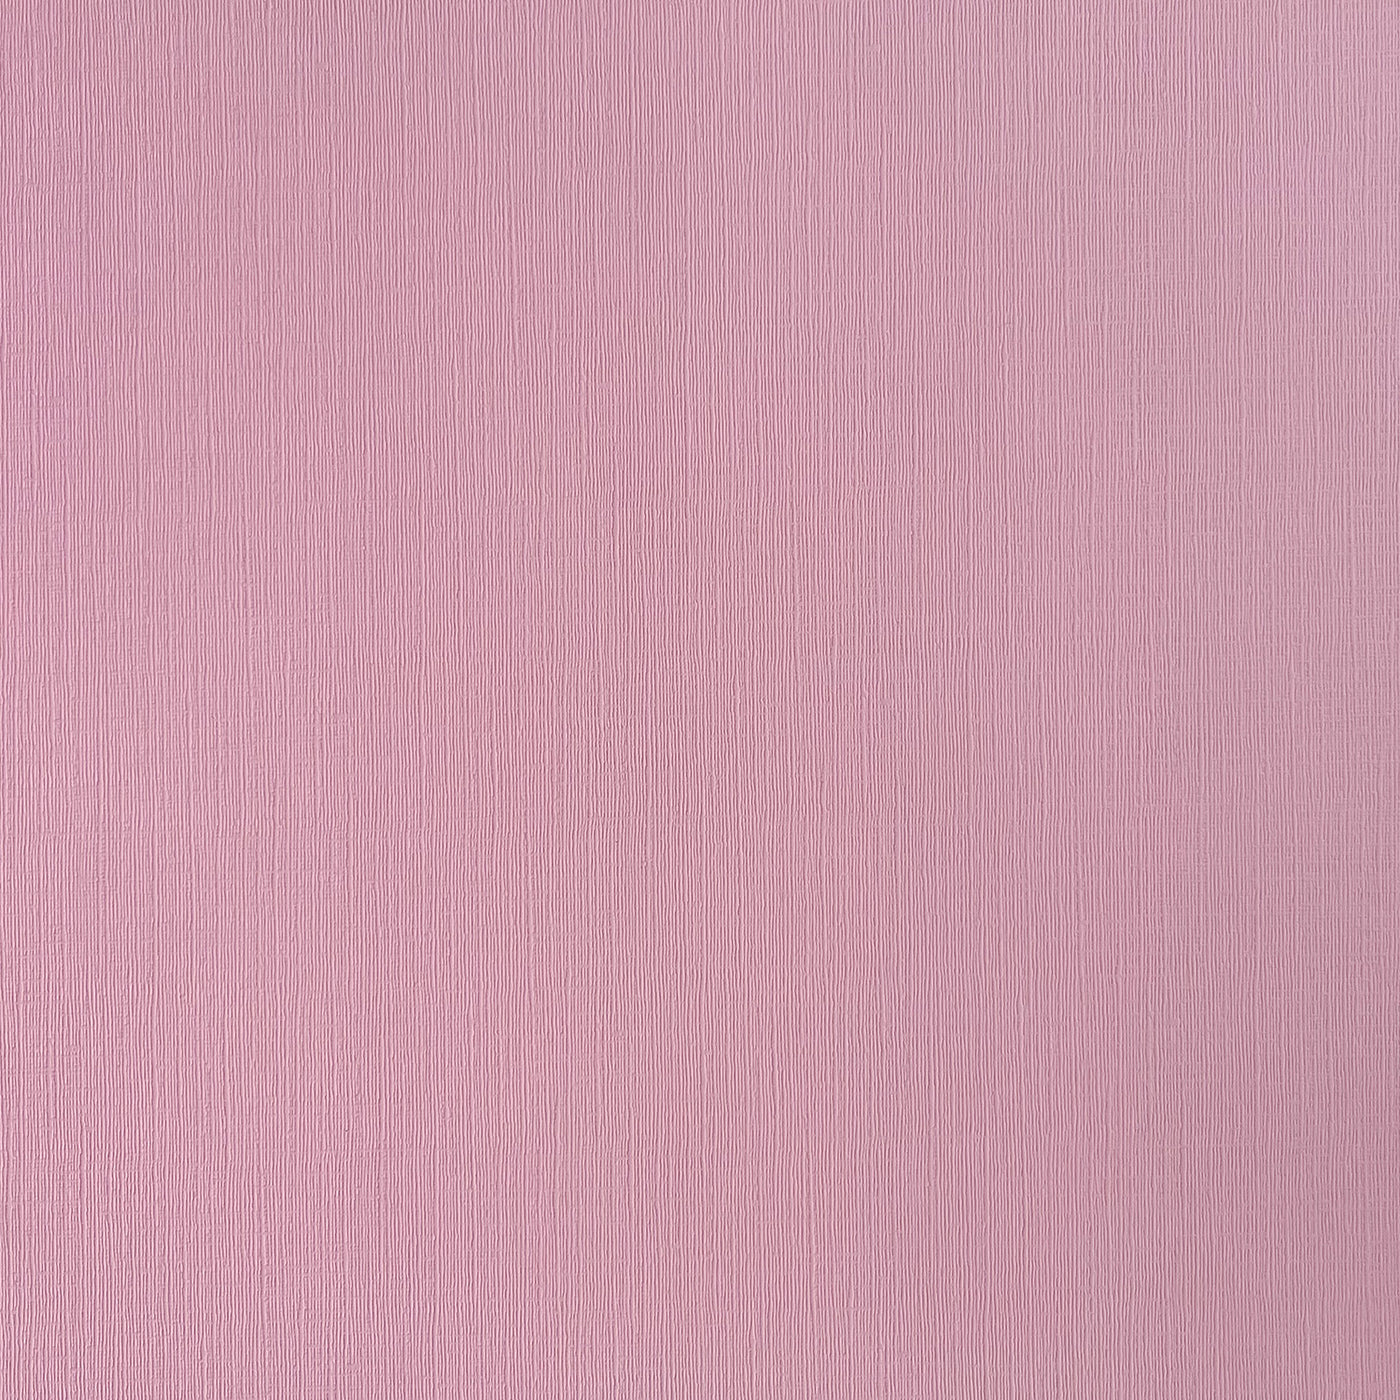 Sweetie Pie - Textured 12x12 Cardstock - Bubblegum pink canvas texture